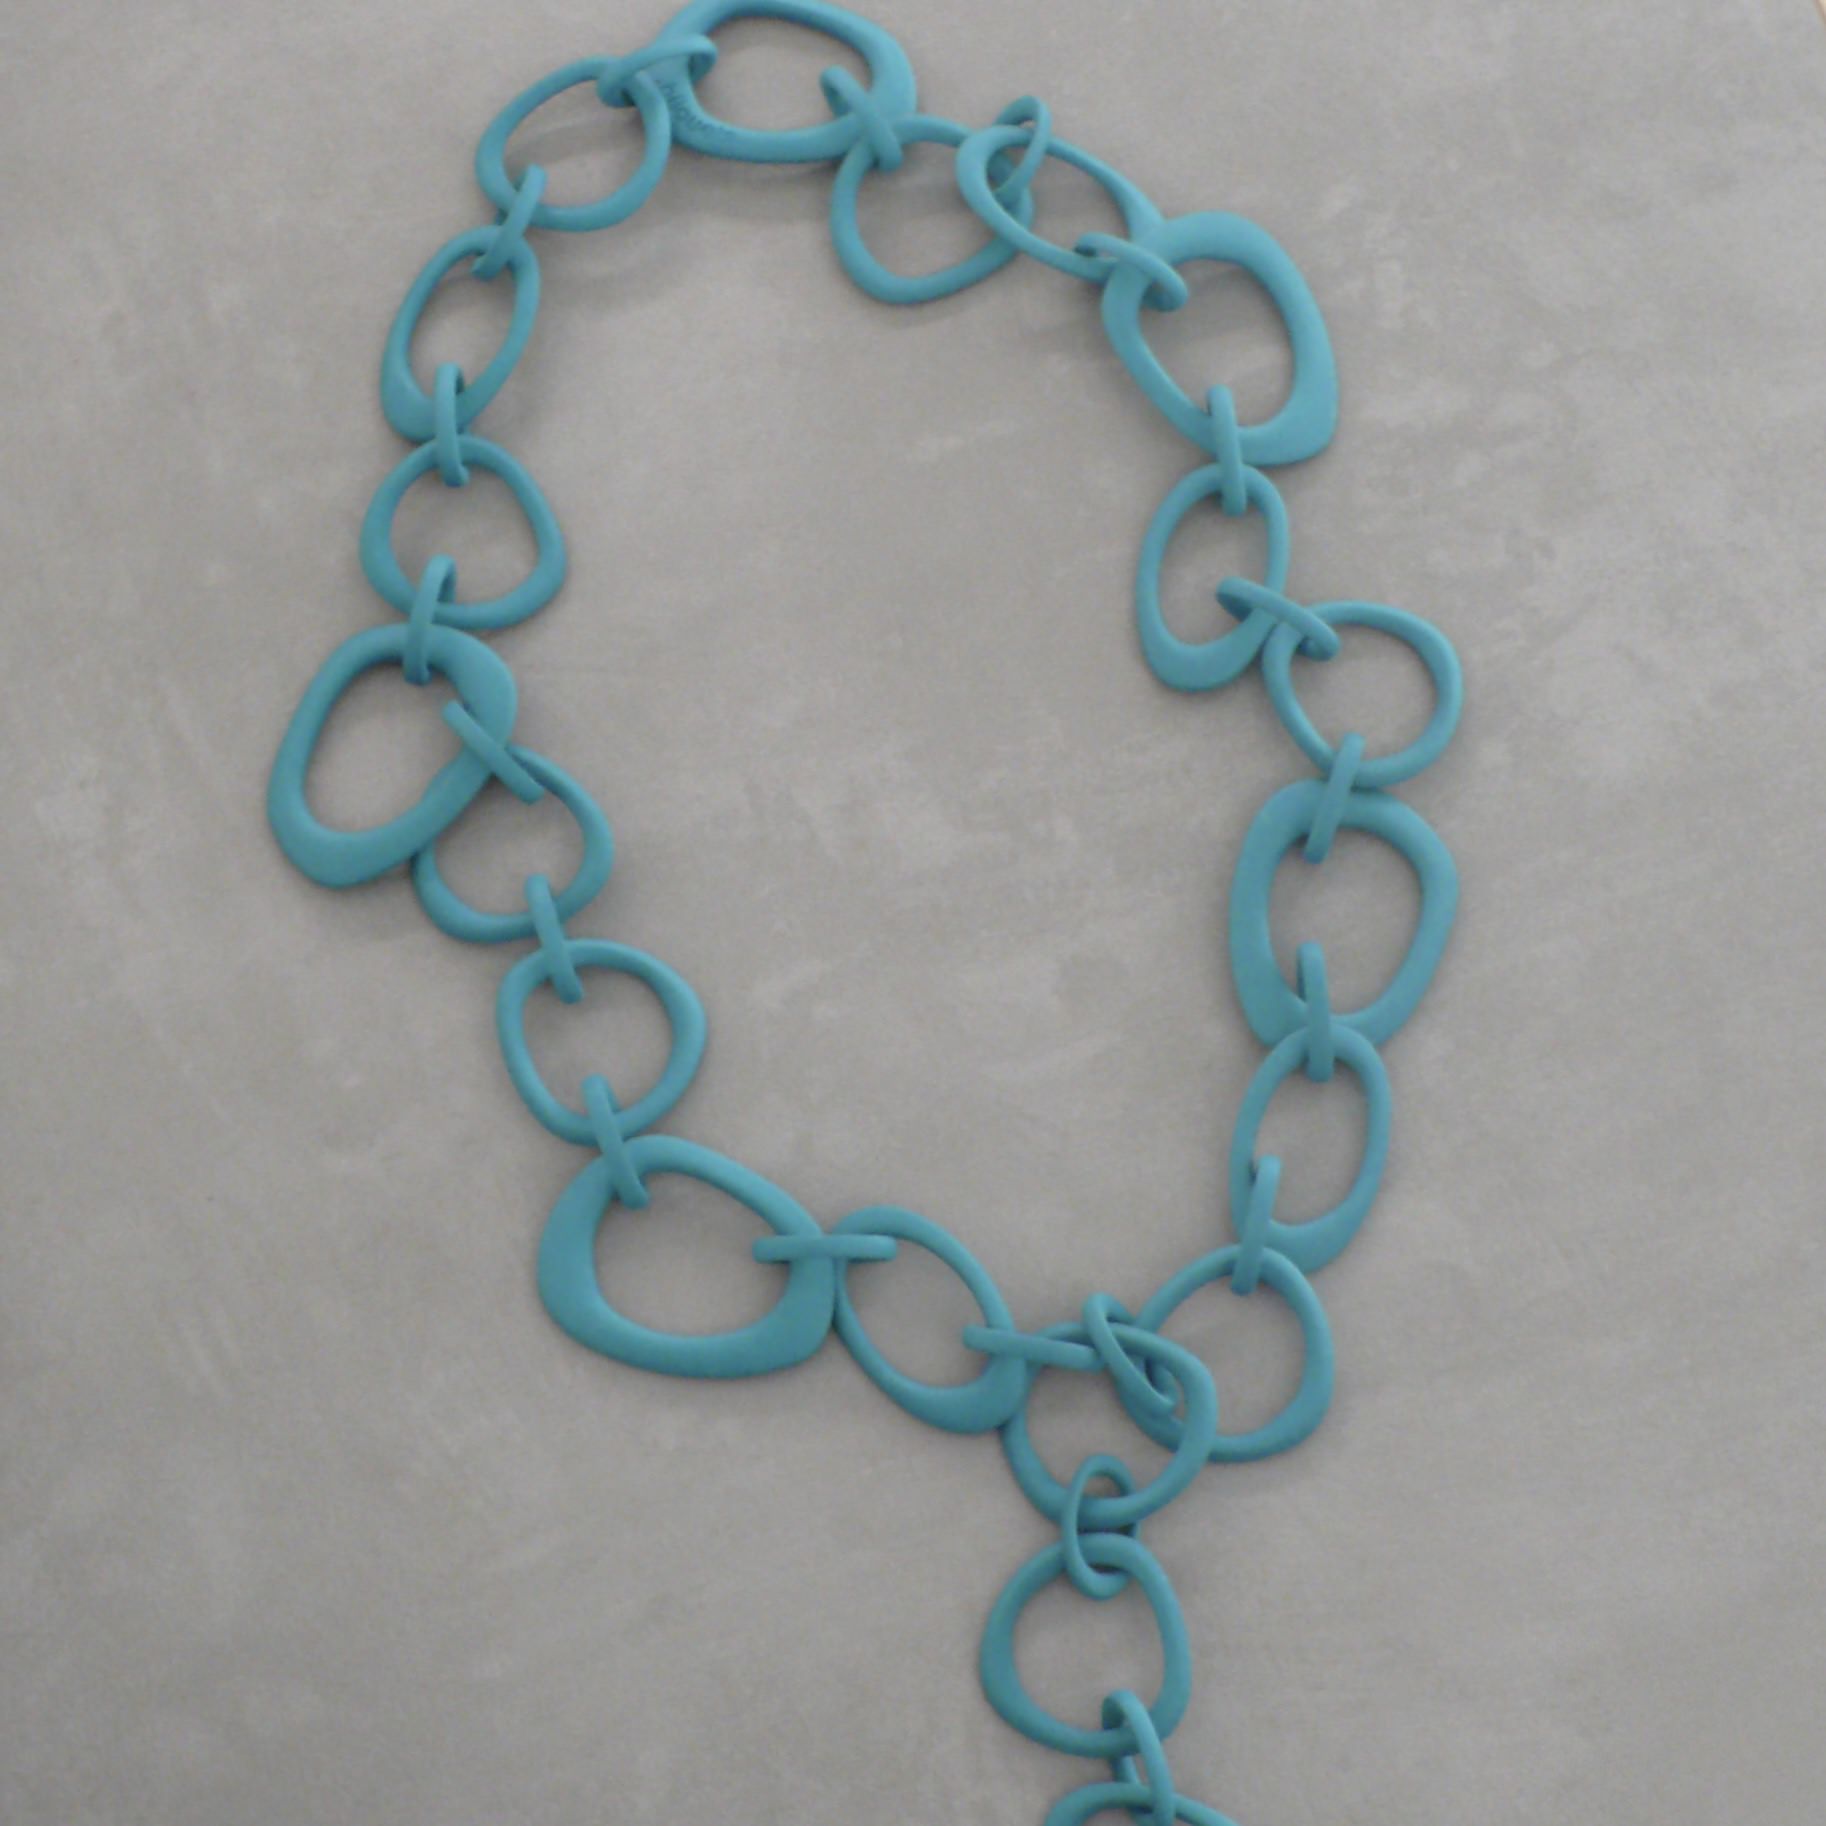 MONICA CASTIGLIONI 3D-CHAIN-KRAFFEN-02 / Turquoise blue